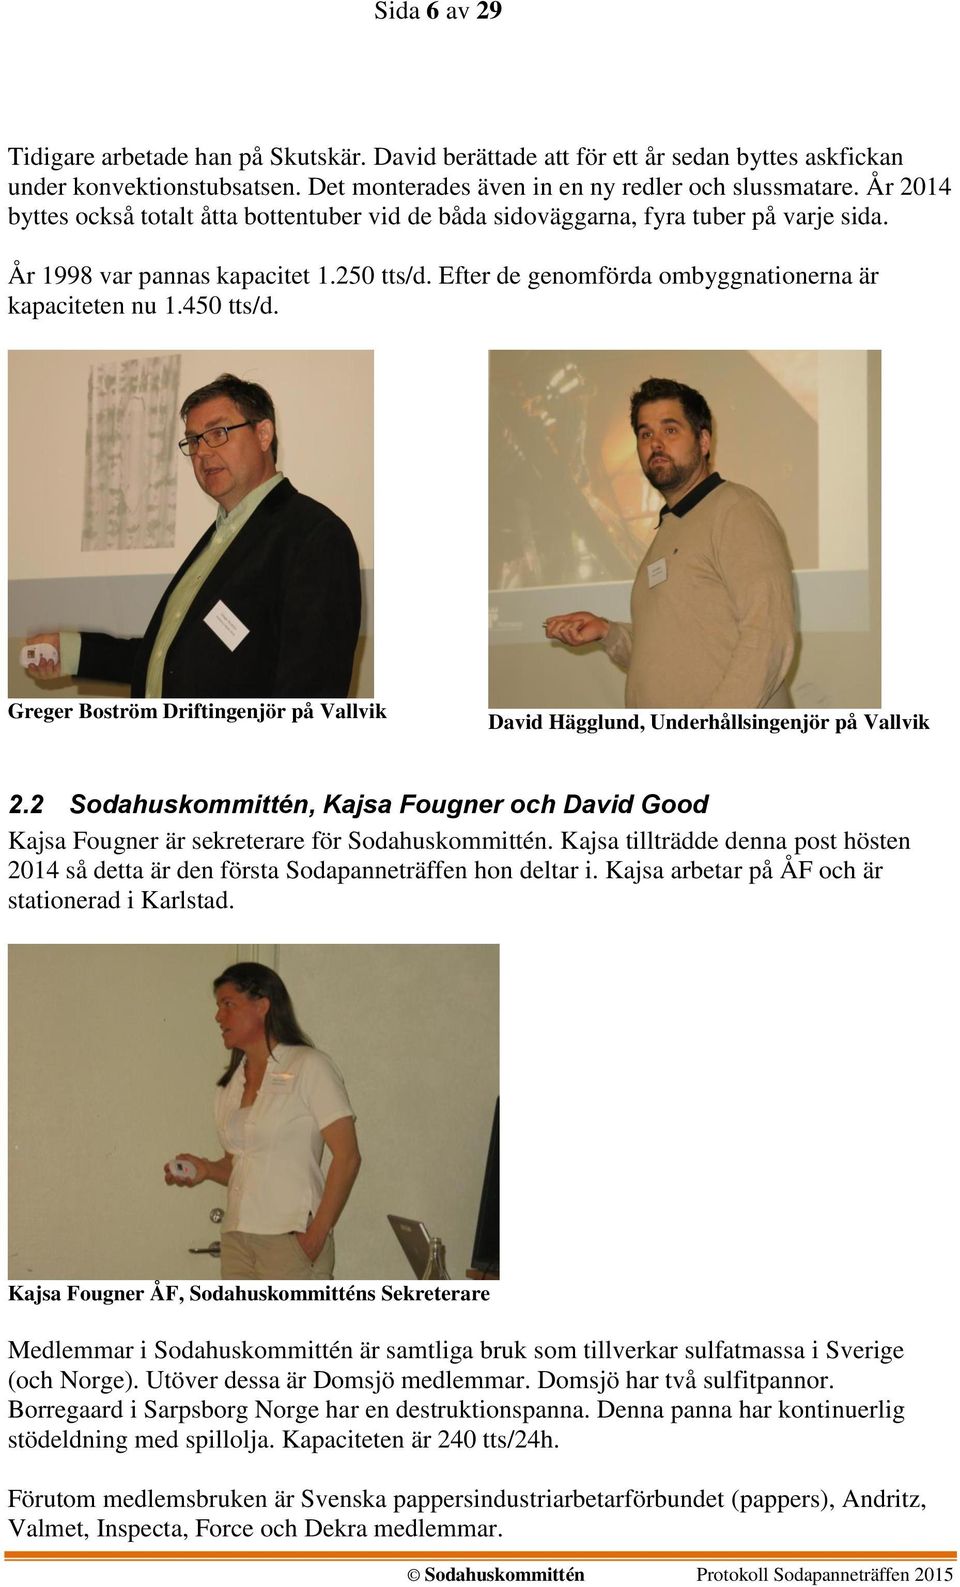 450 tts/d. Greger Boström Driftingenjör på Vallvik David Hägglund, Underhållsingenjör på Vallvik 2.2 Sodahuskommittén, Kajsa Fougner och David Good Kajsa Fougner är sekreterare för Sodahuskommittén.